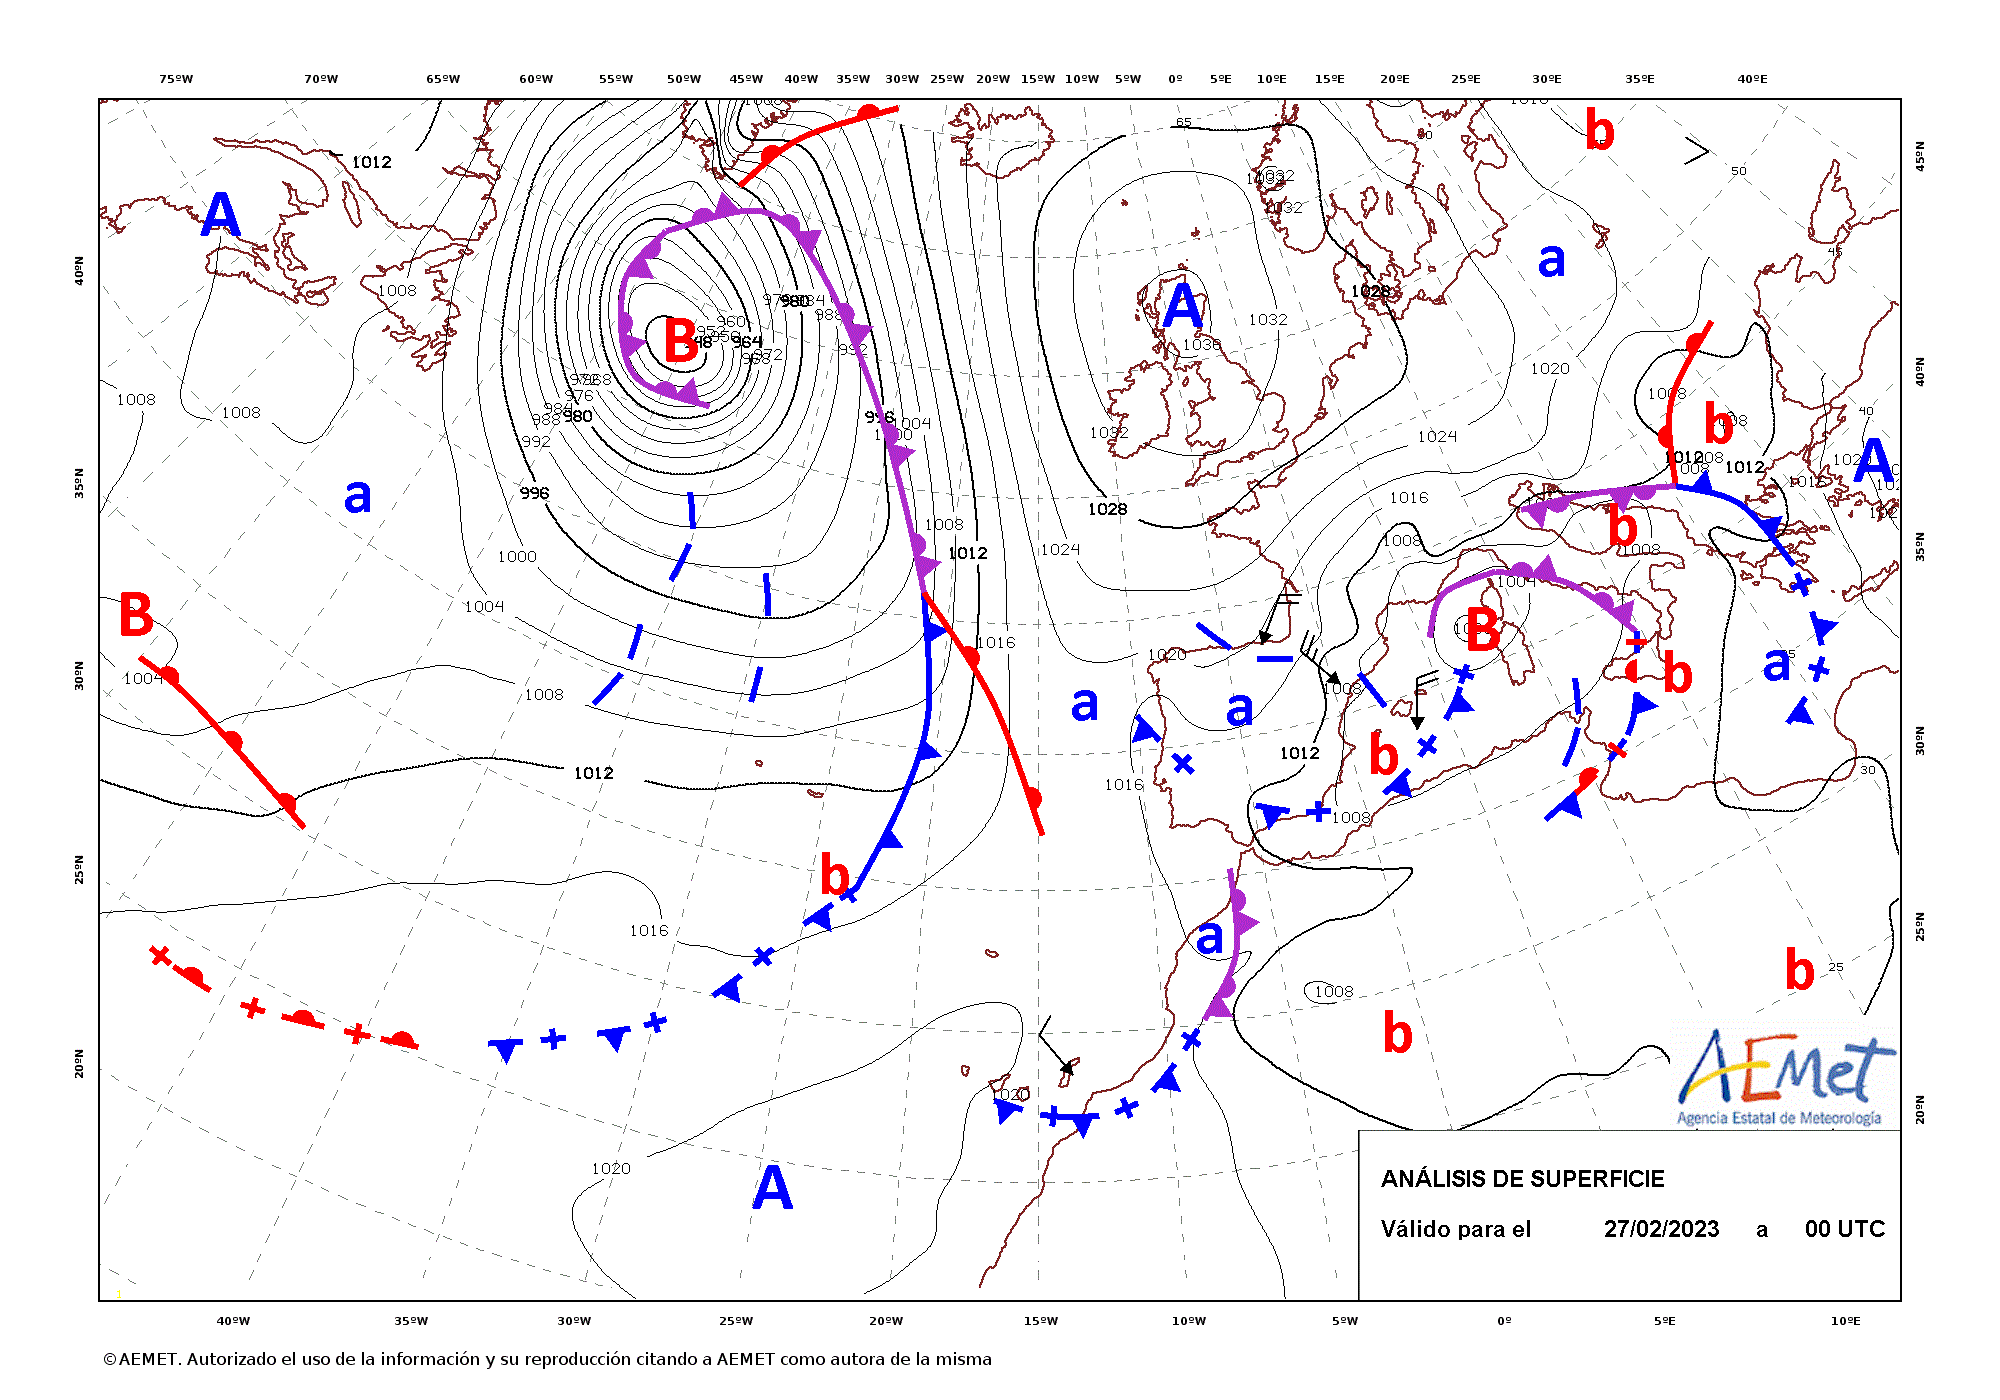 Análisis de superficie cada 12 horas entre los días 27 de febrero y 1 de marzo de 2023. En ella se puede ver la coexistencia de dos grandes borrascas, Kamiel en el Atlántico y Juliette en el Mediterráneo occidental.